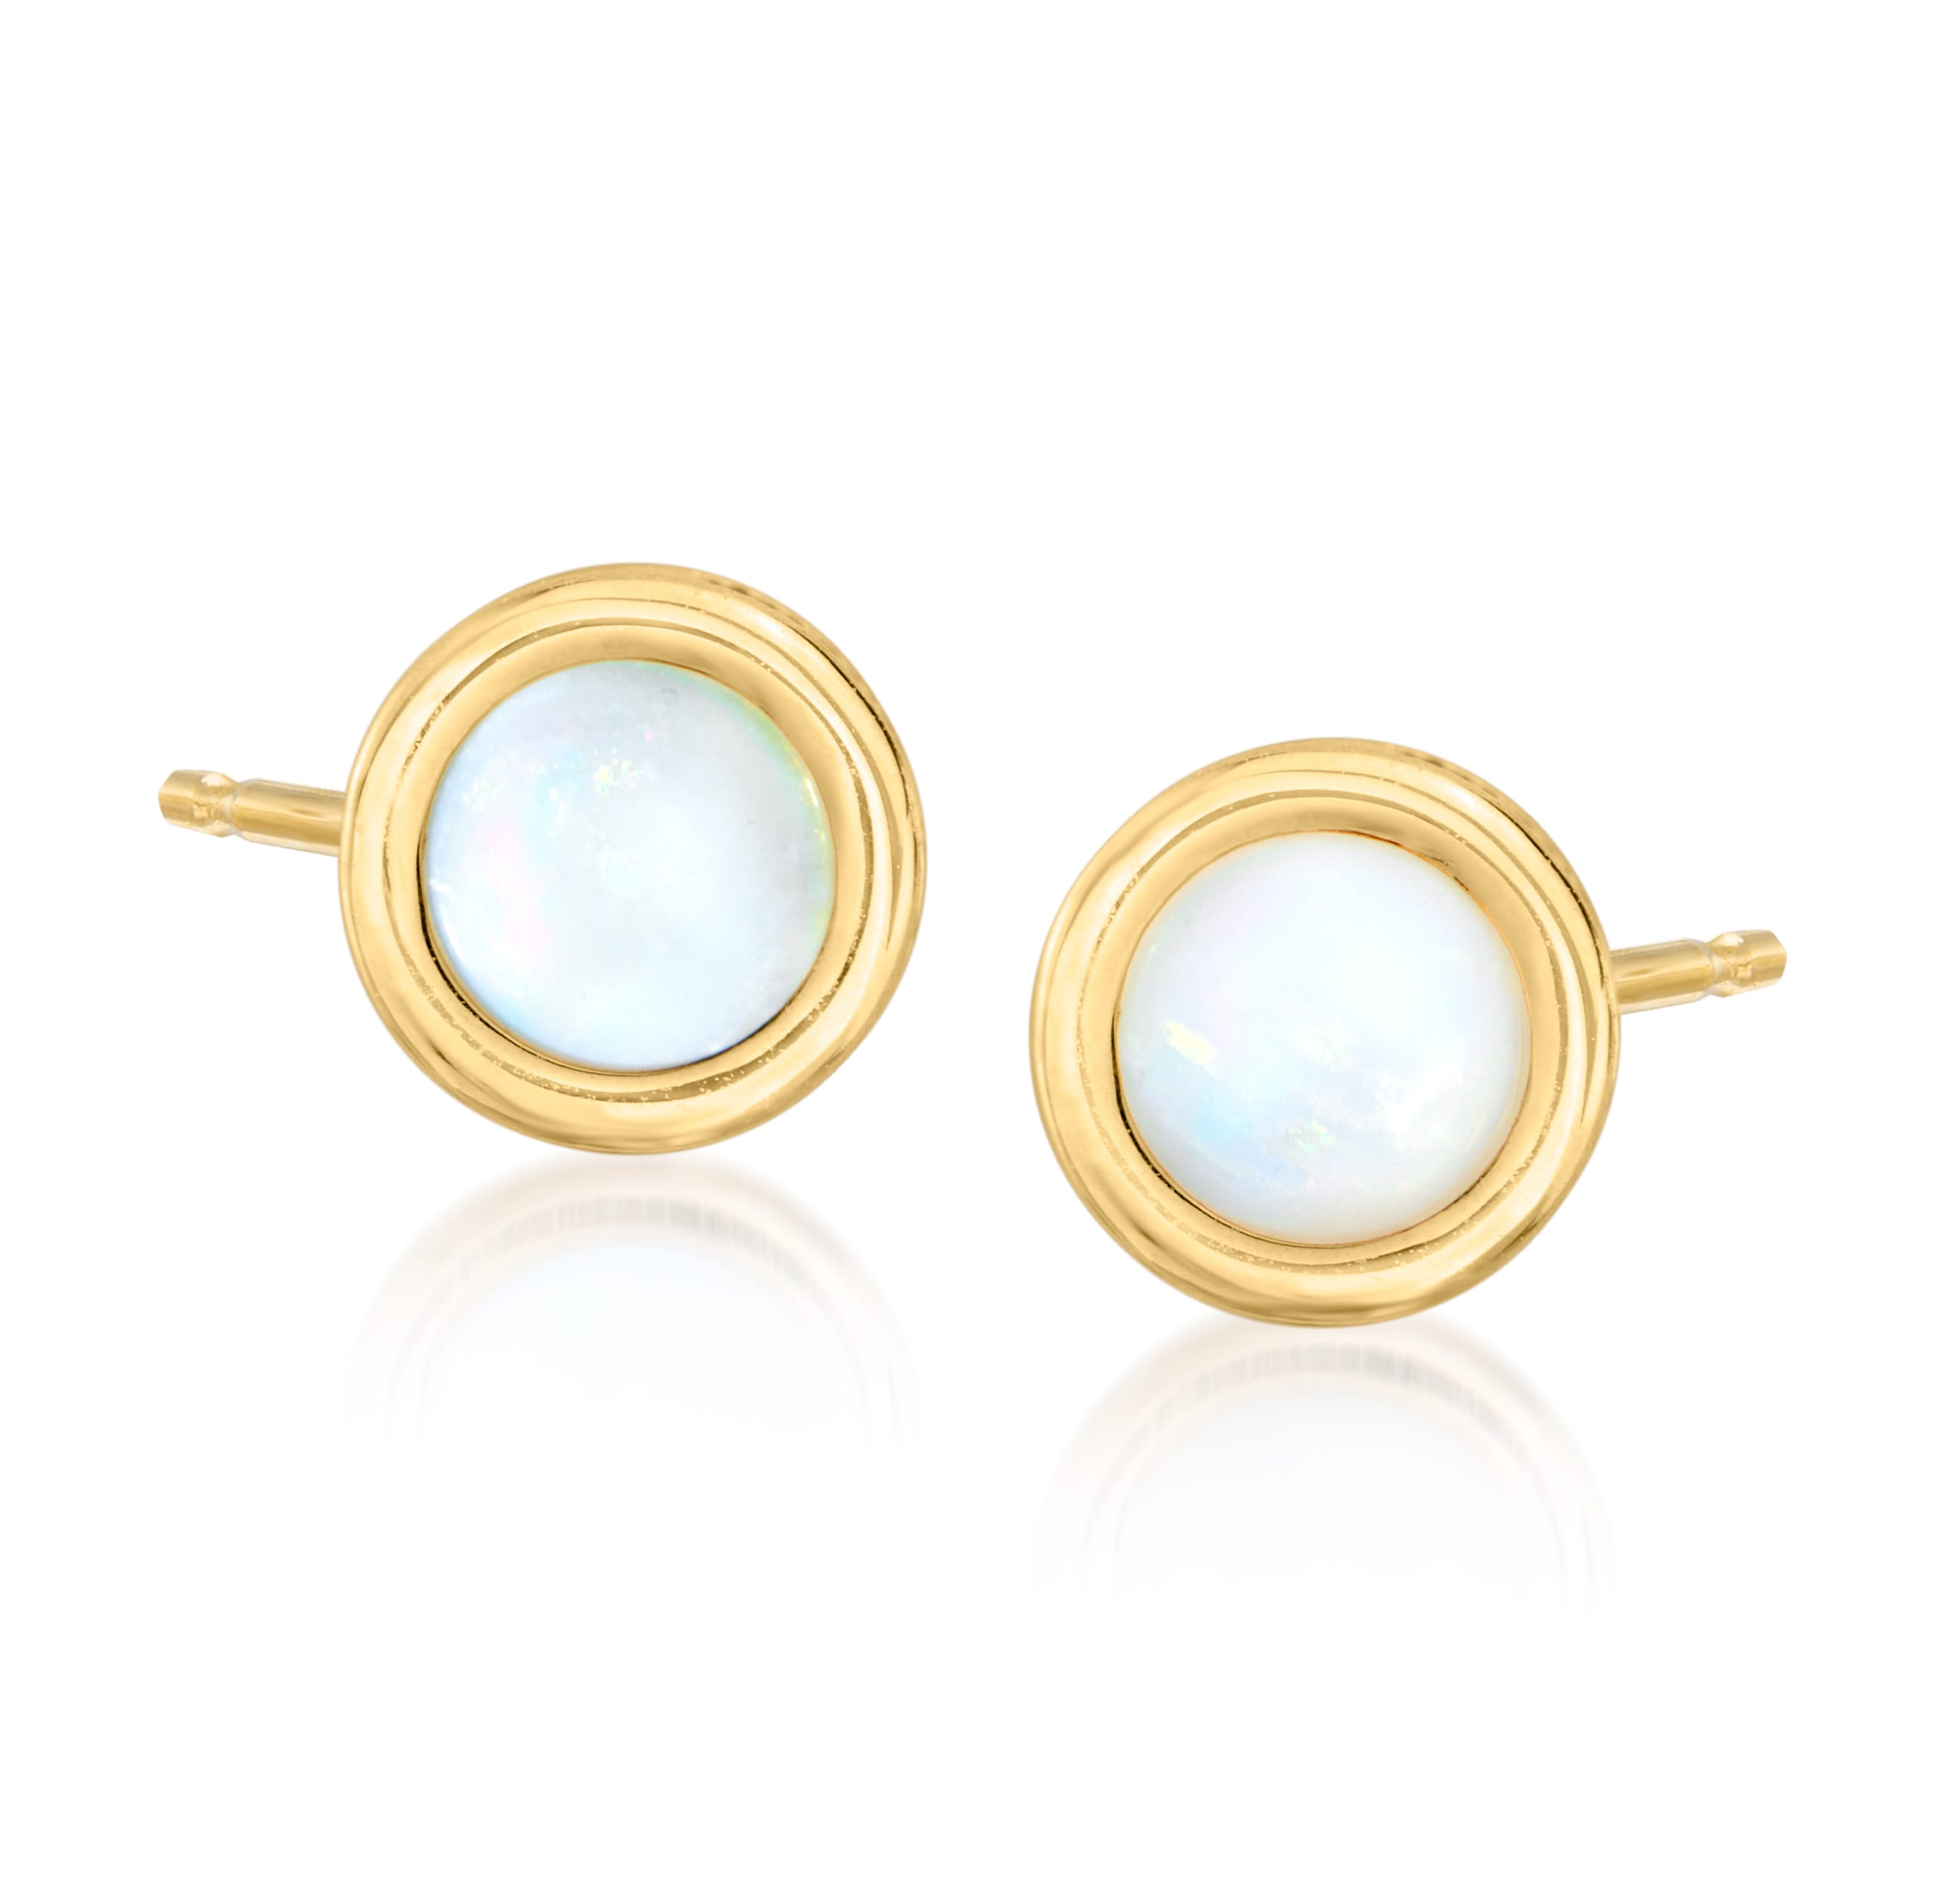 5mm Bezel-Set Opal Stud Earrings in 14kt Yellow Gold | Ross-Simons